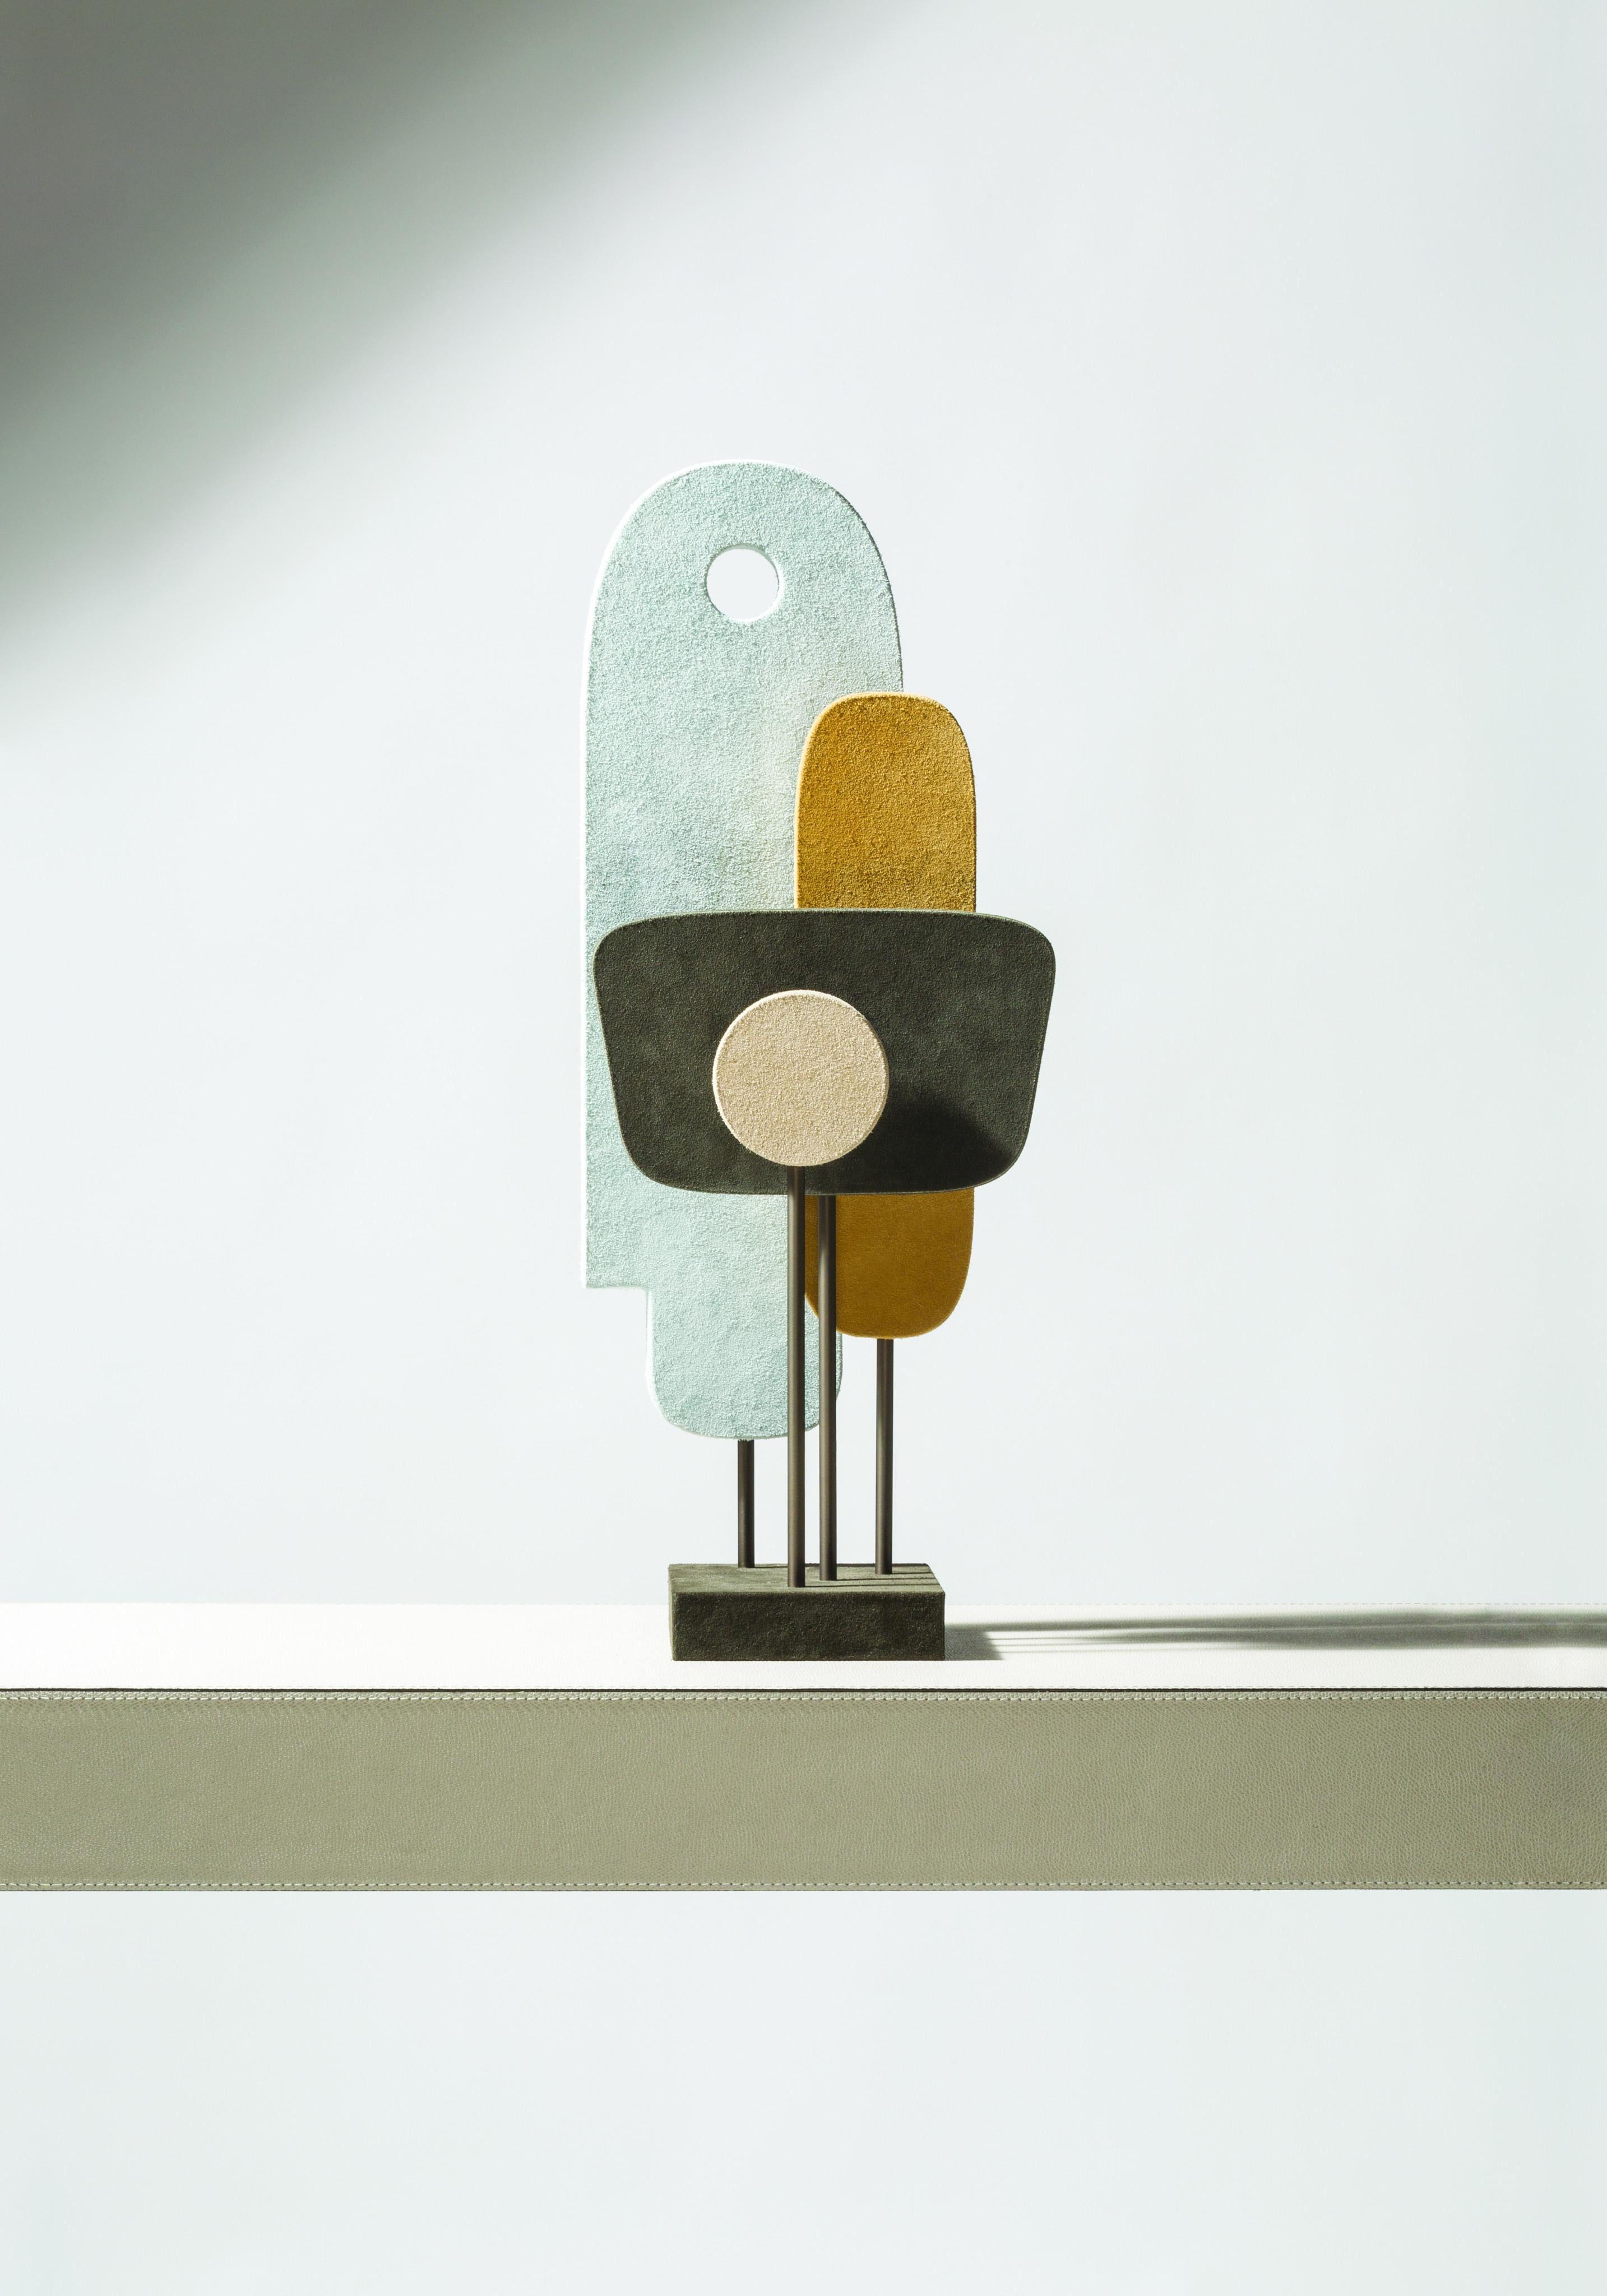 Tabou-Skulptur 1 -- Stéphane Parmentier x Giobagnara

Nur in Veloursleder und Bronze erhältlich.

Die Collection'S von Stephane Parmentier für Giobagnara verkörpert mit ihrem eleganten Design und den schönen MATERIALEN ein Bekenntnis zur luxuriösen